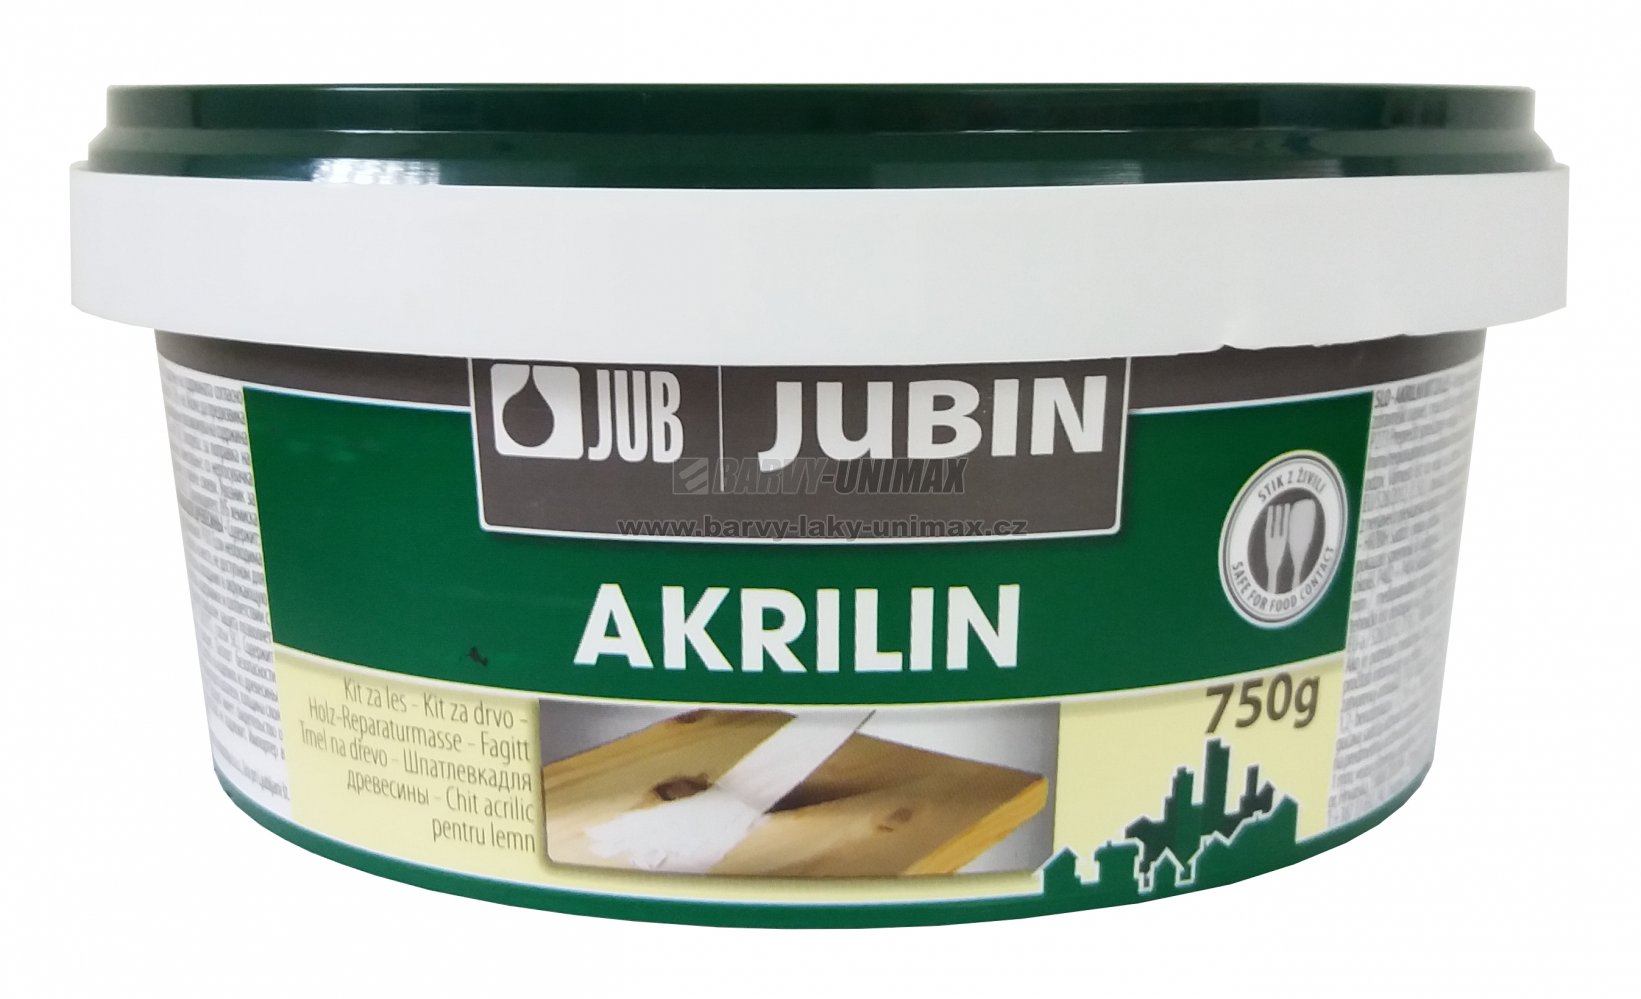 JUB JUBIN Akrilin Dub,750g